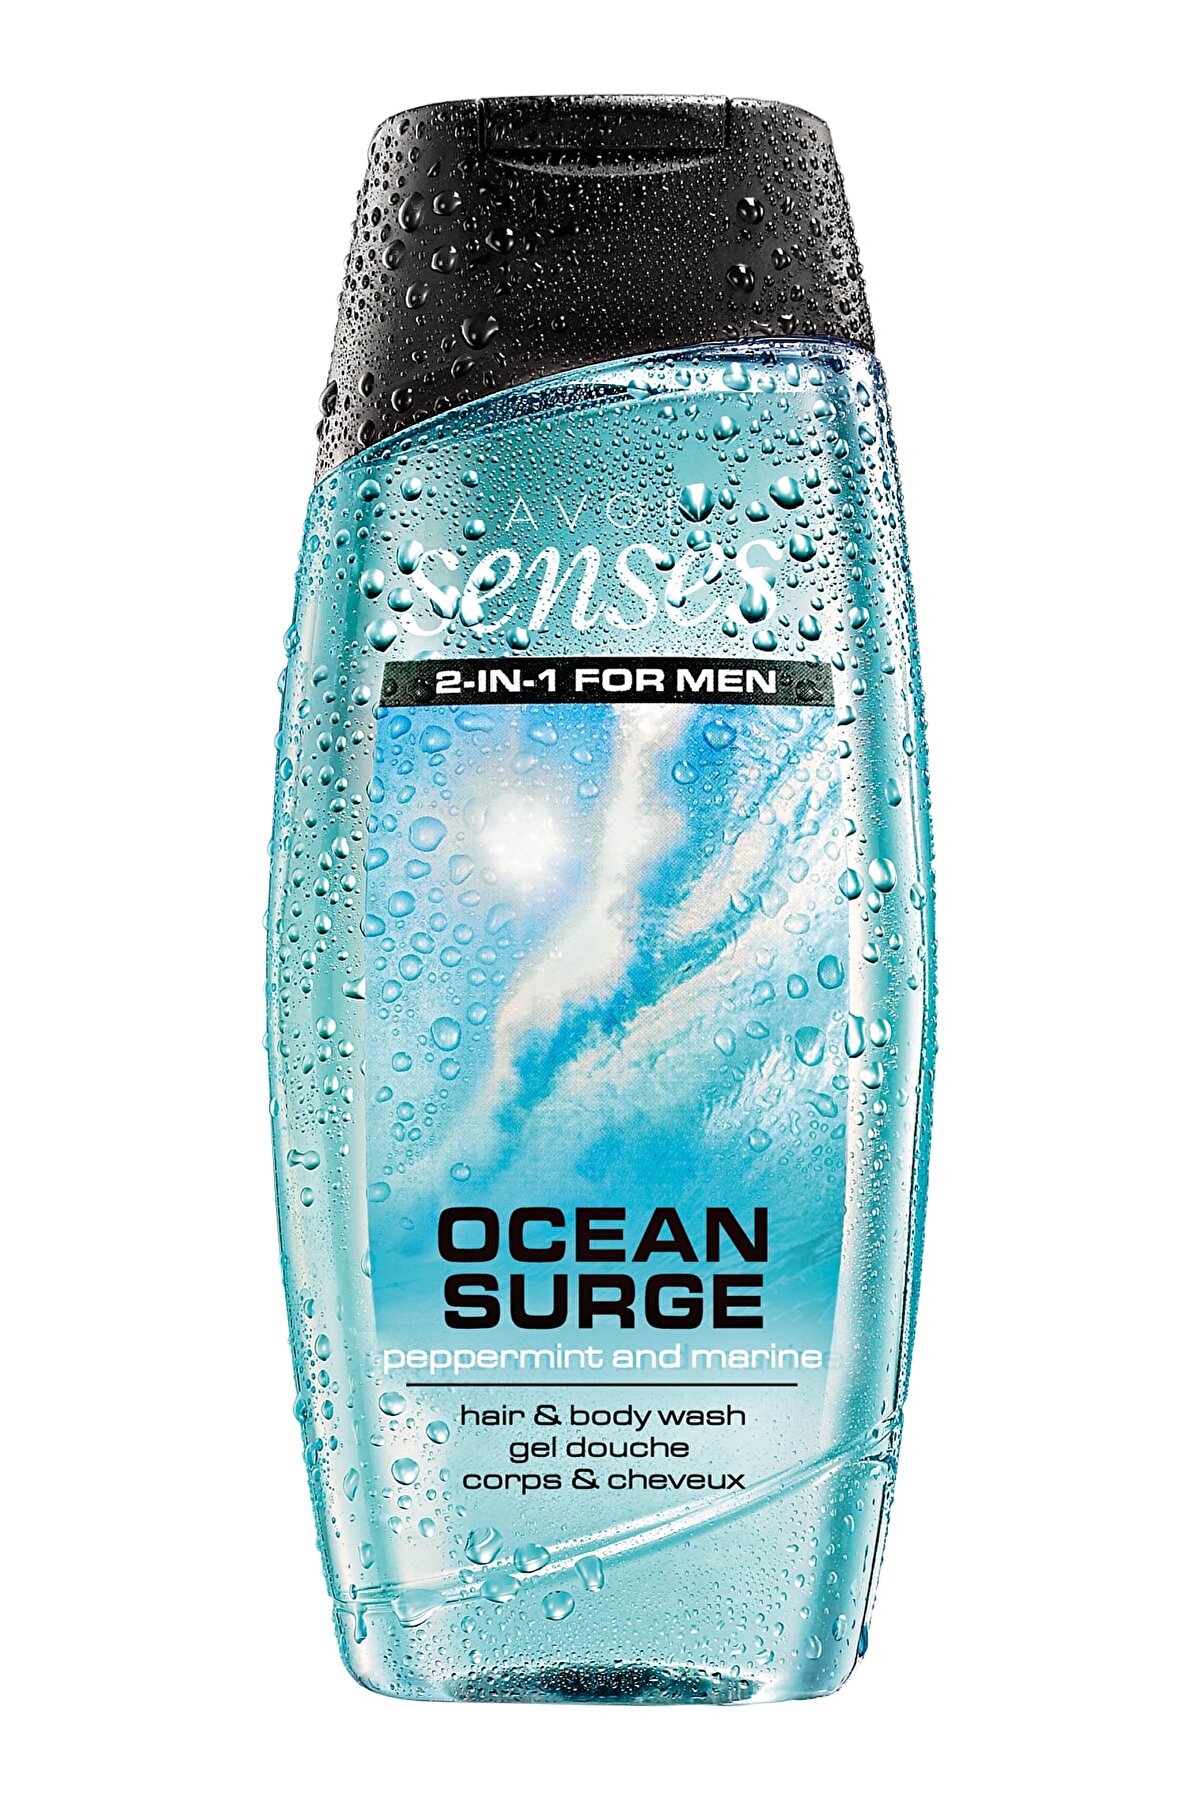 Avon Senses Erkekler için Ocean Surge Saç & Vücut Şampuanı 250 ml 8681298961895